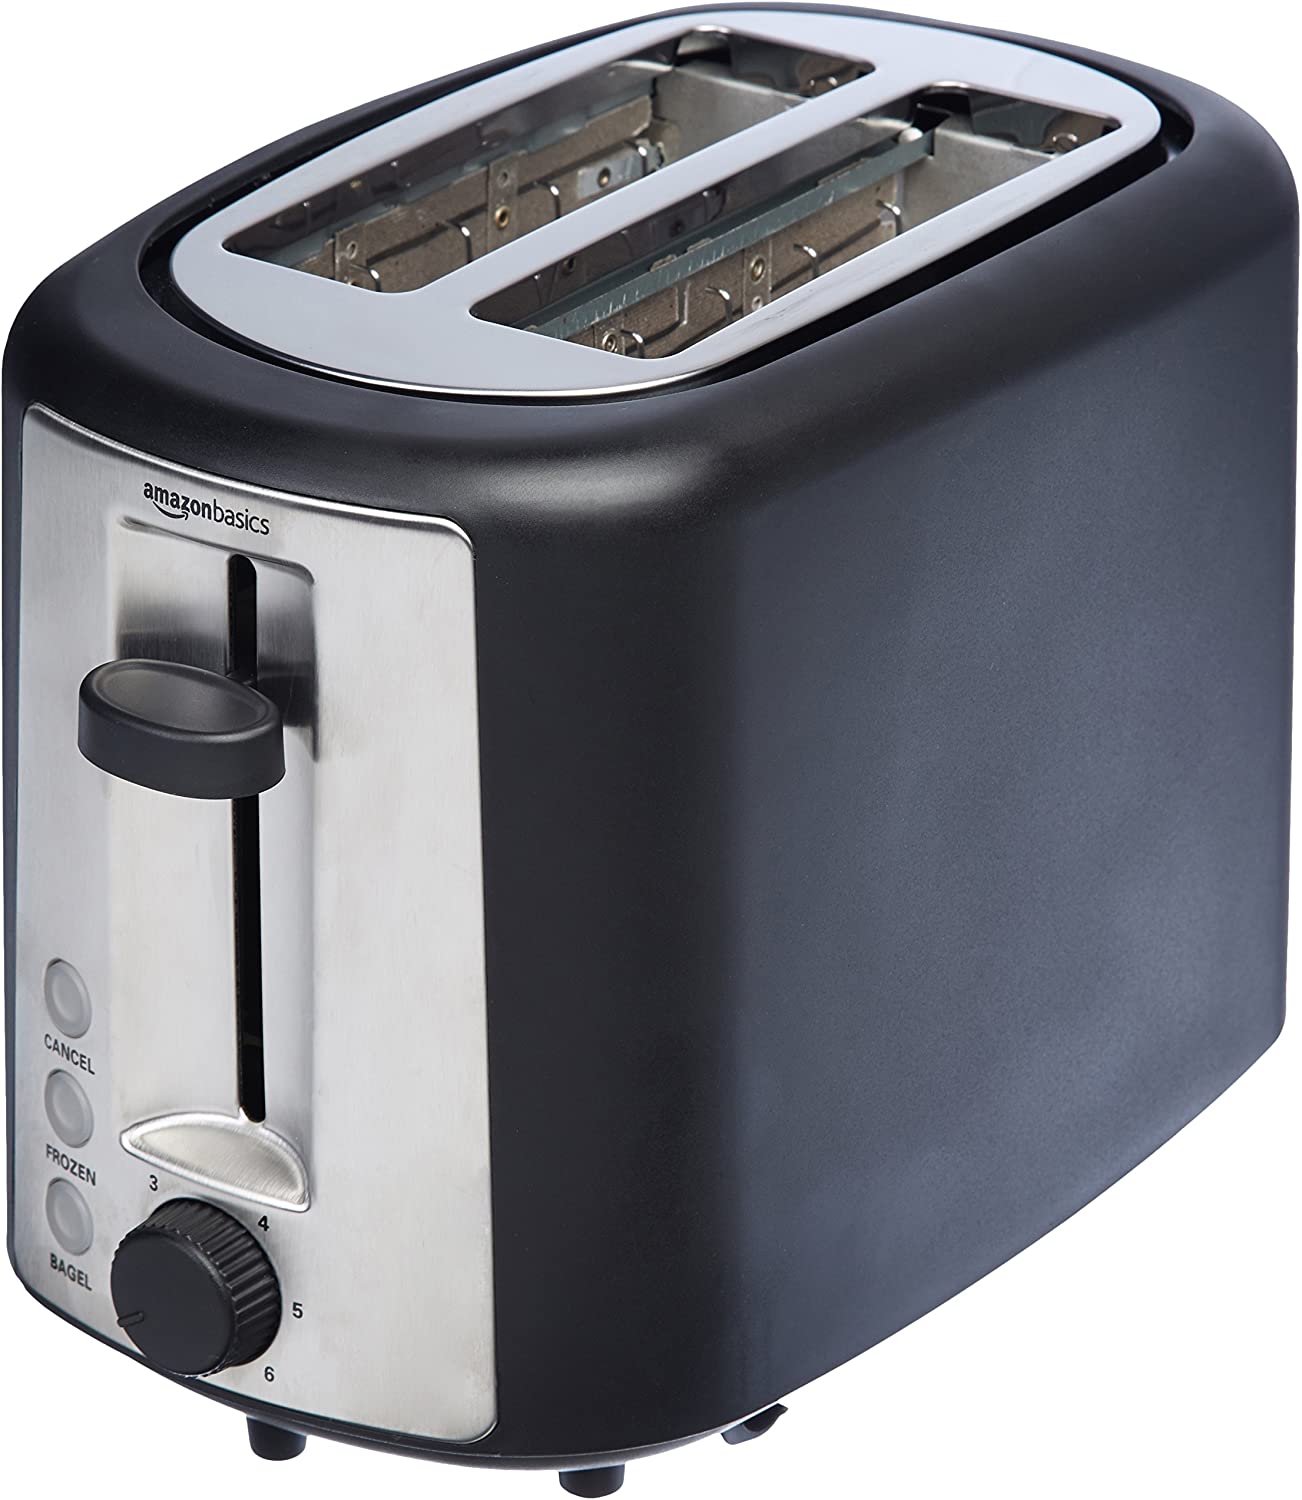 https://www.dontwasteyourmoney.com/wp-content/uploads/2020/05/amazonbasics-2-slice-extra-wide-slot-toaster-toaster.jpg